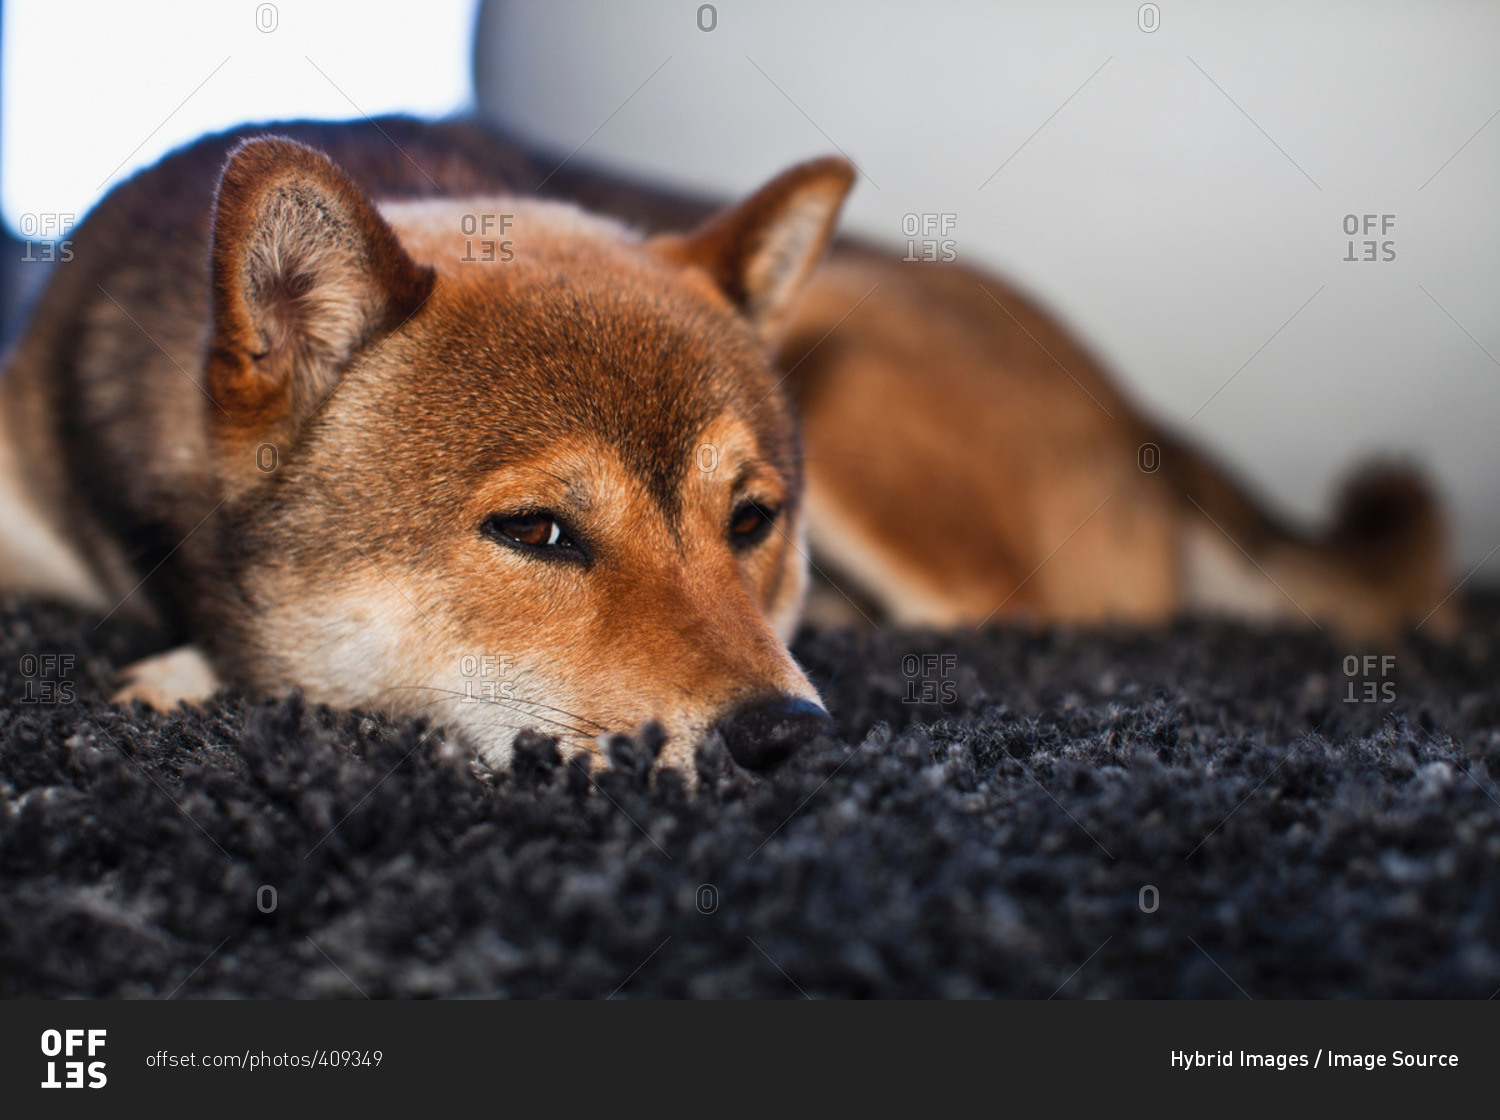 Dog laying on rug